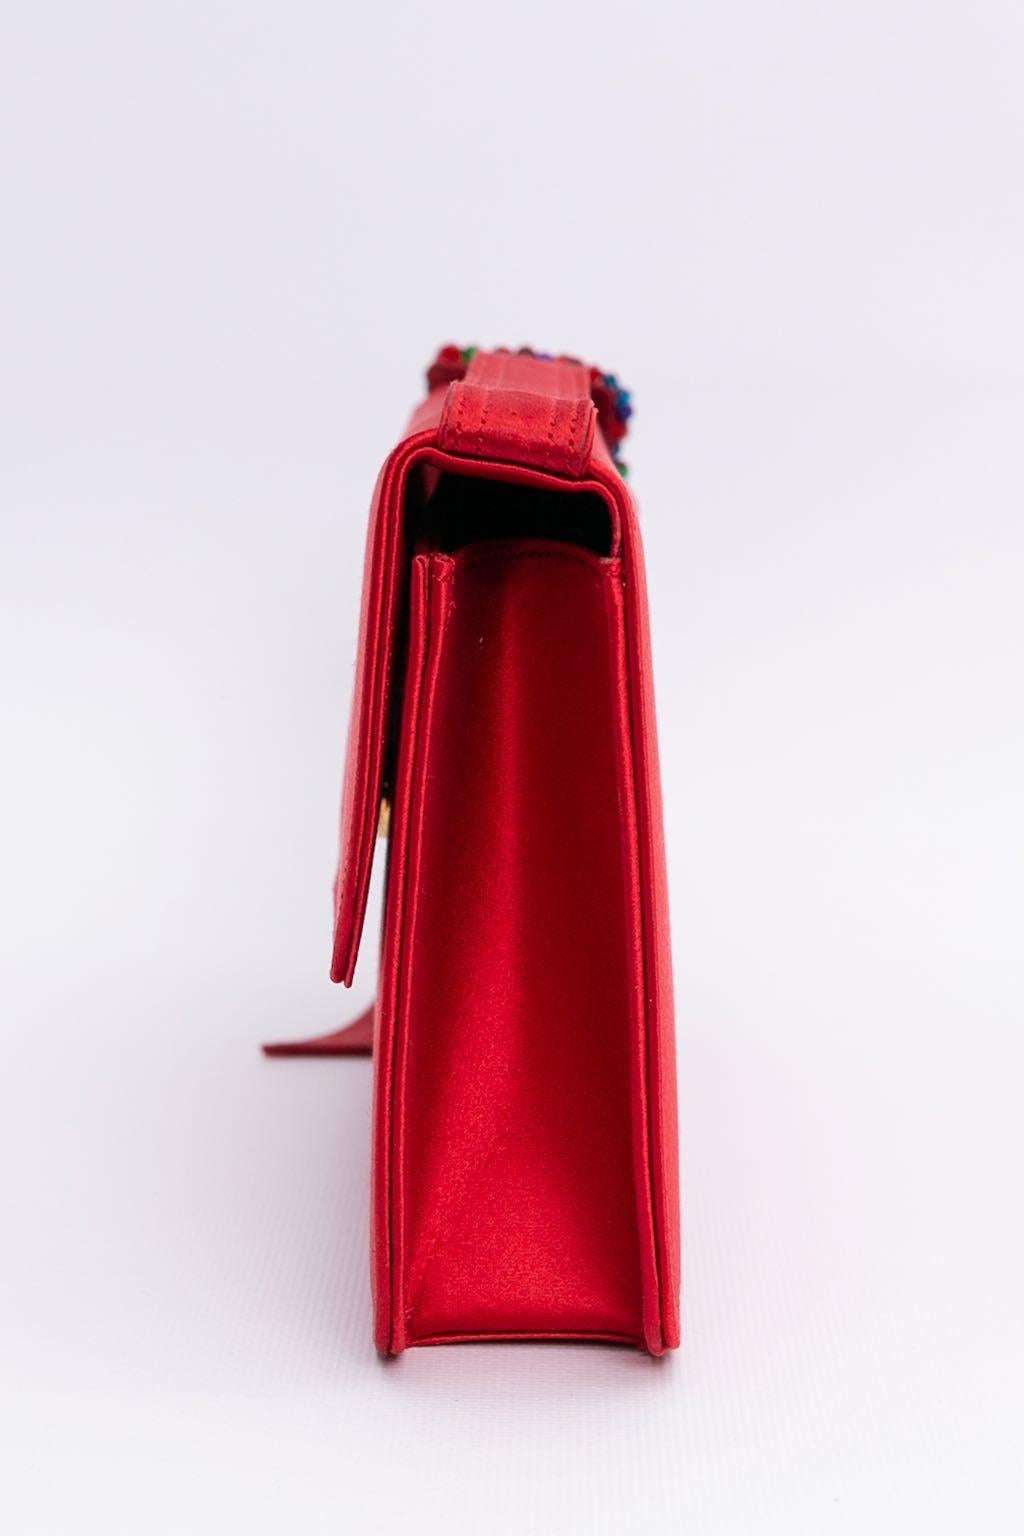 Renaud Pellegrino (hergestellt in Frankreich). Rote Seidentasche mit gürtelähnlichem Griff. Die Schnalle ist mit Glasperlen bestickt. Drei aufgesetzte Taschen, davon eine mit Reißverschluss.

Zusätzliche Informationen: 
Abmessungen: Länge: 25,5 cm